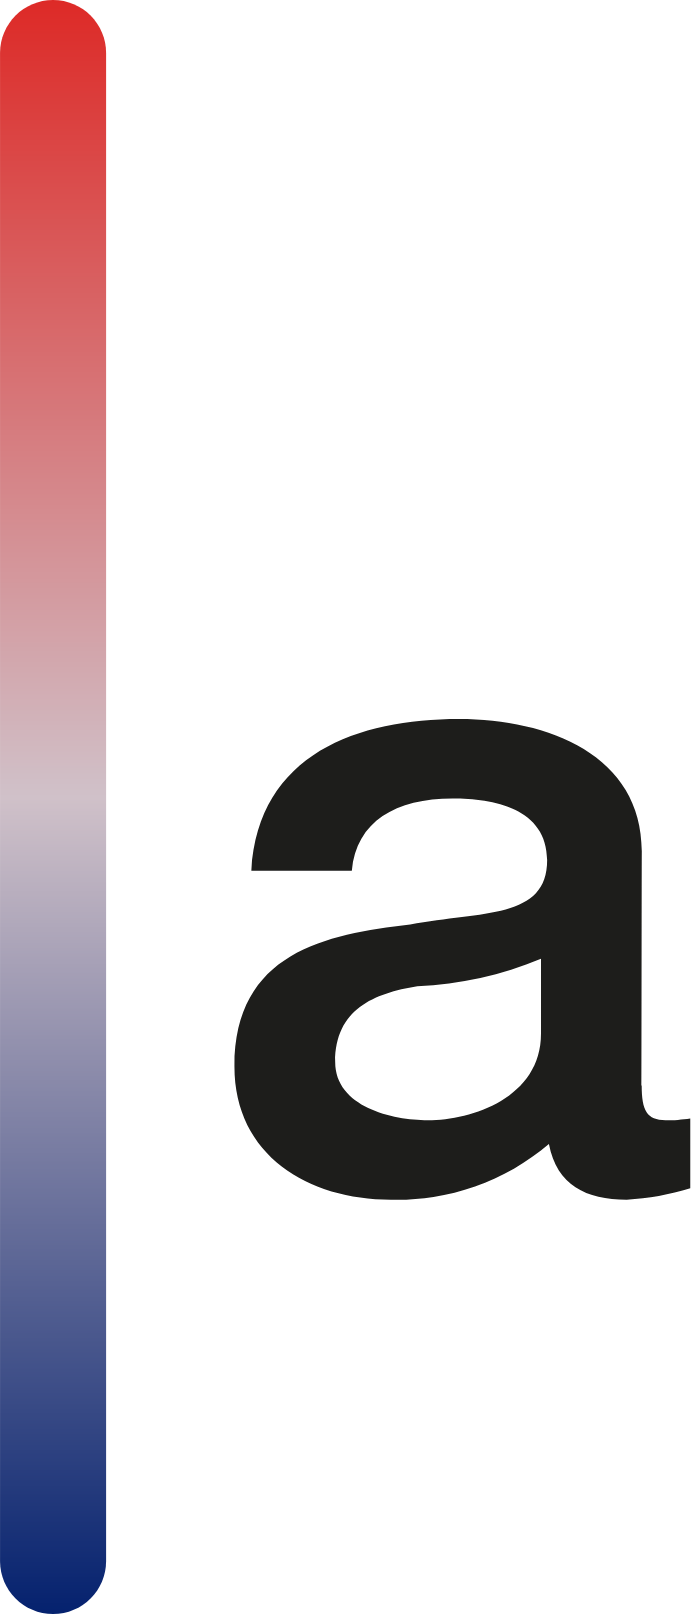 Aspen Aerogels logo (PNG transparent)